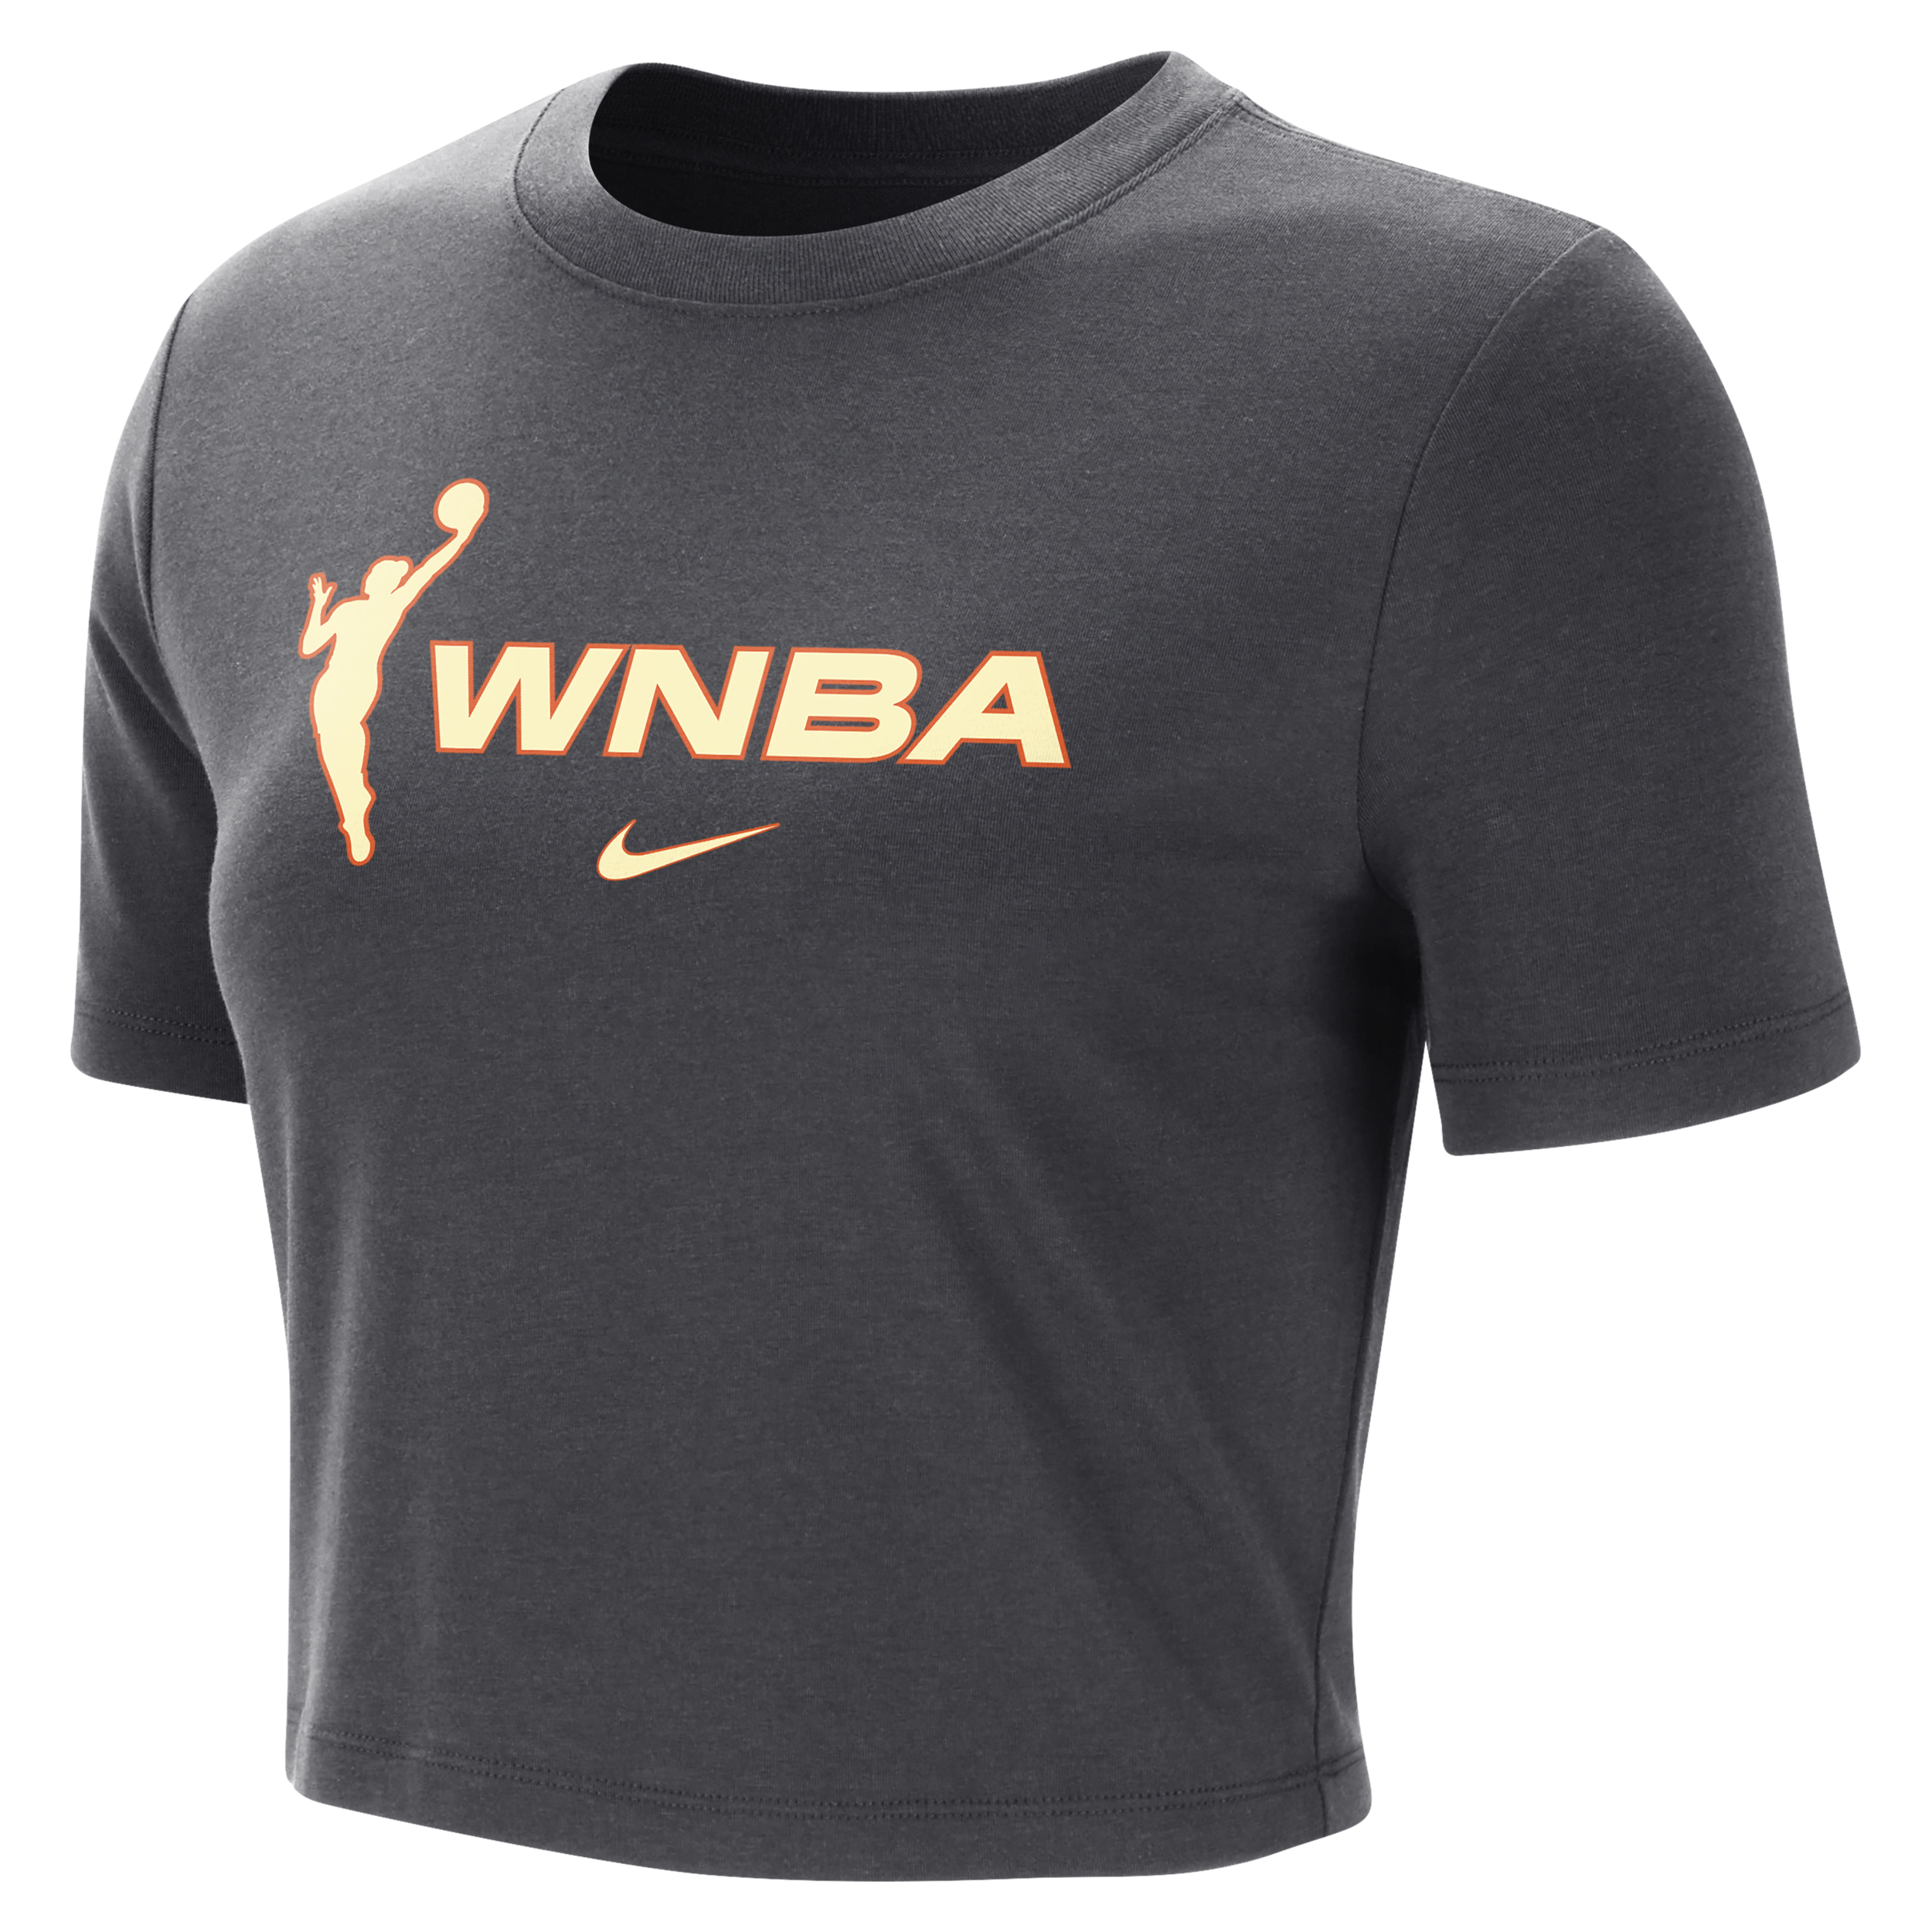 Nike Team 13  Women's Wnba Crop T-shirt In Gray